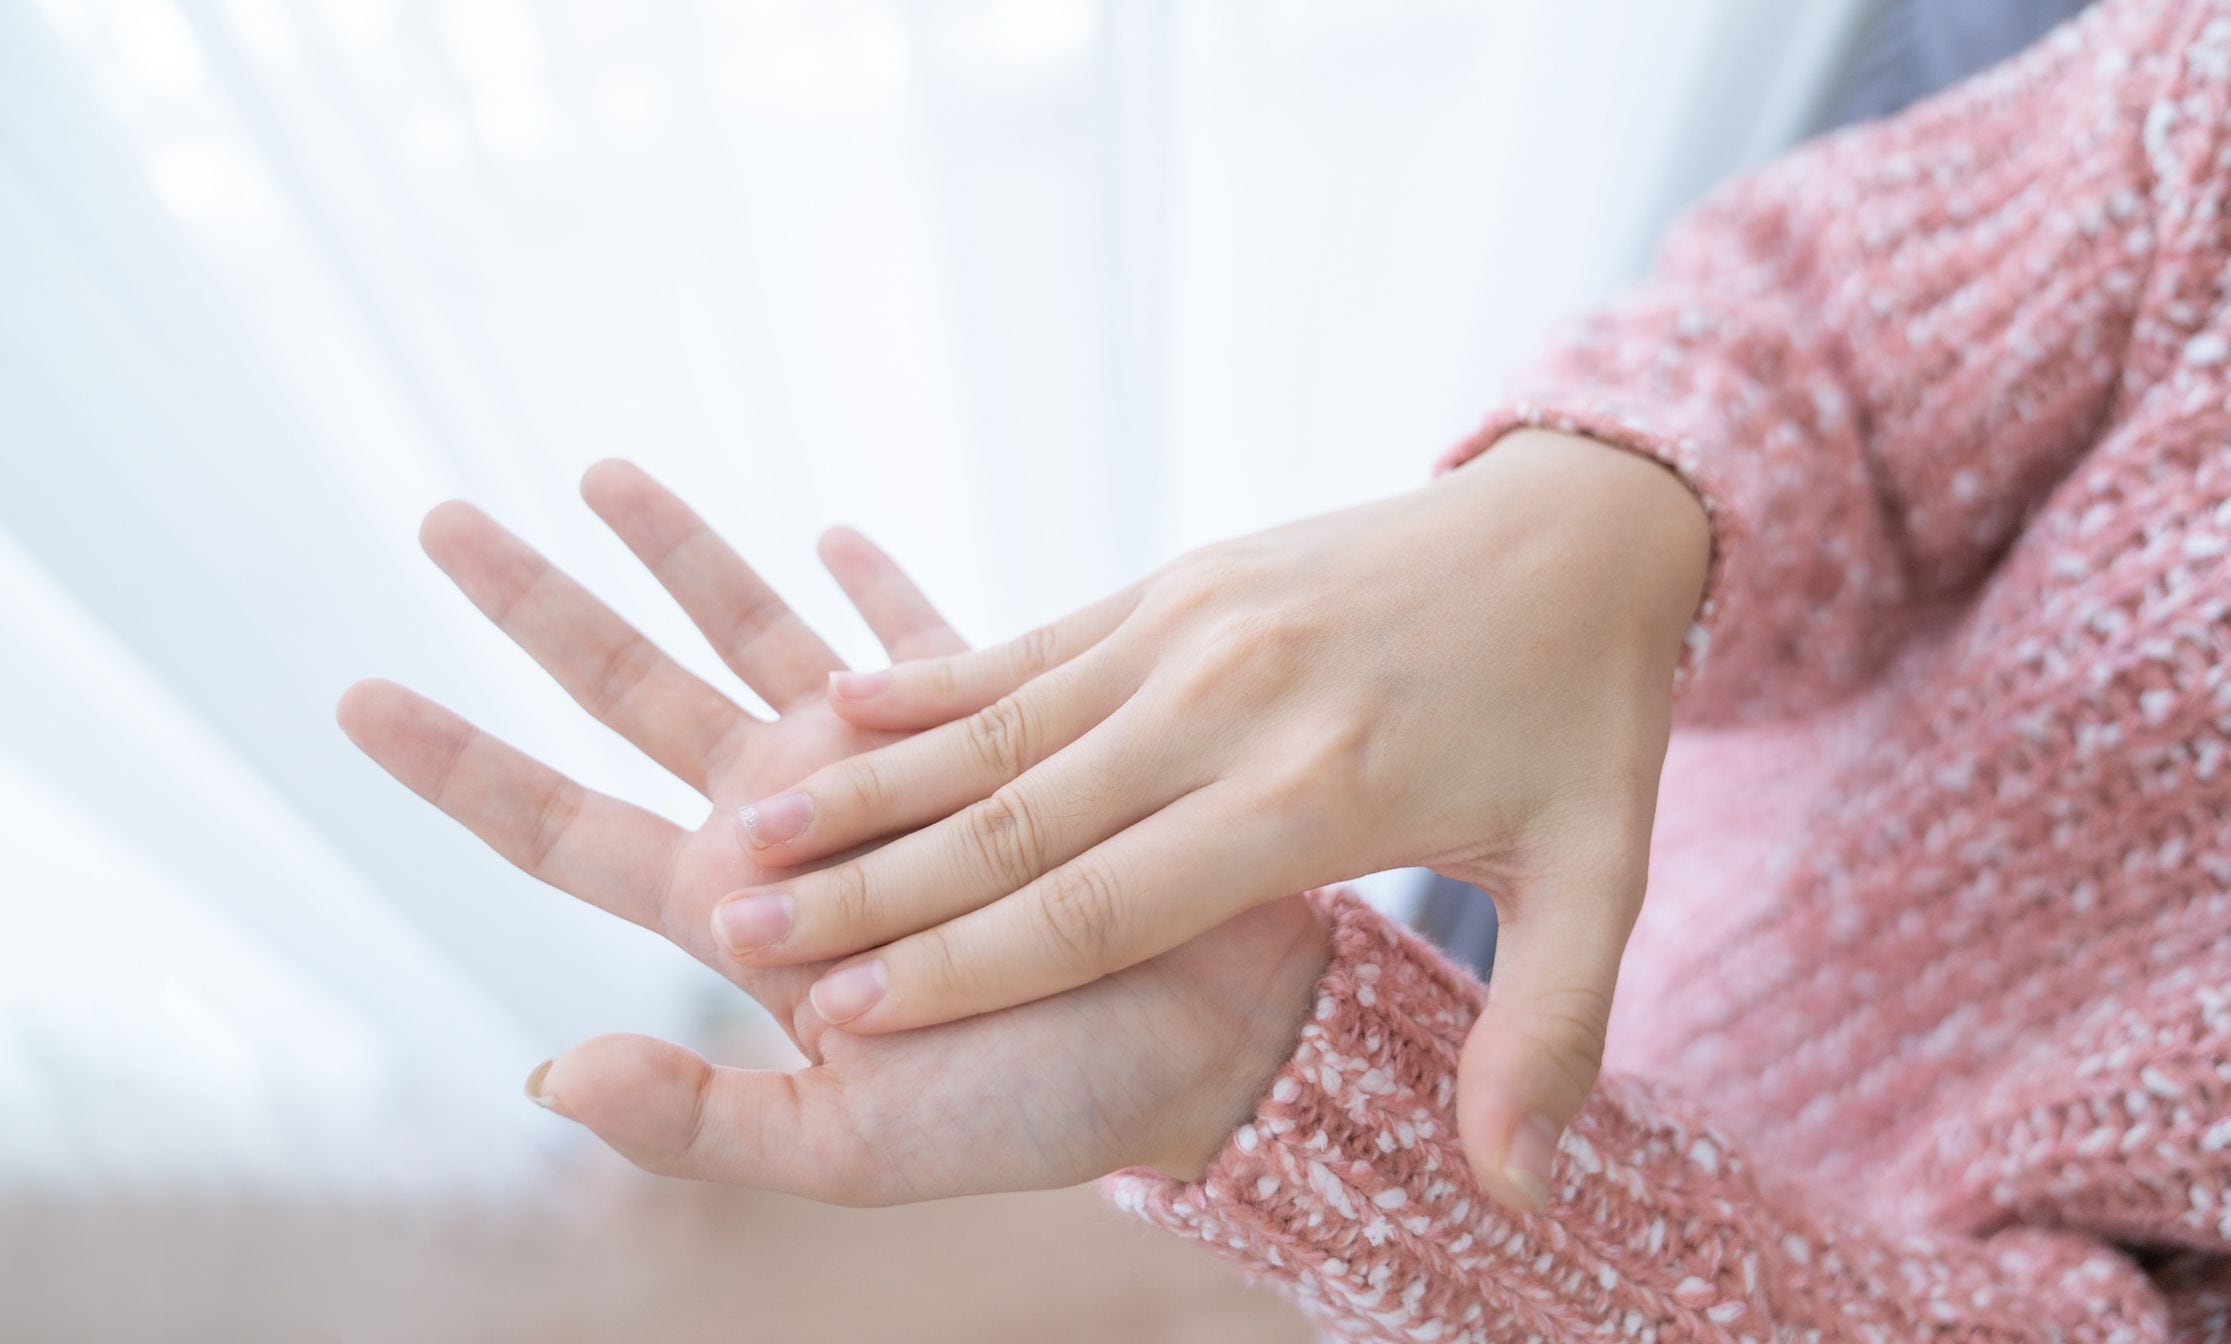 Cuando se registren cambios en la forma, la textura o el color de las uñas, es mejor consultar con un profesional
(Getty Images)